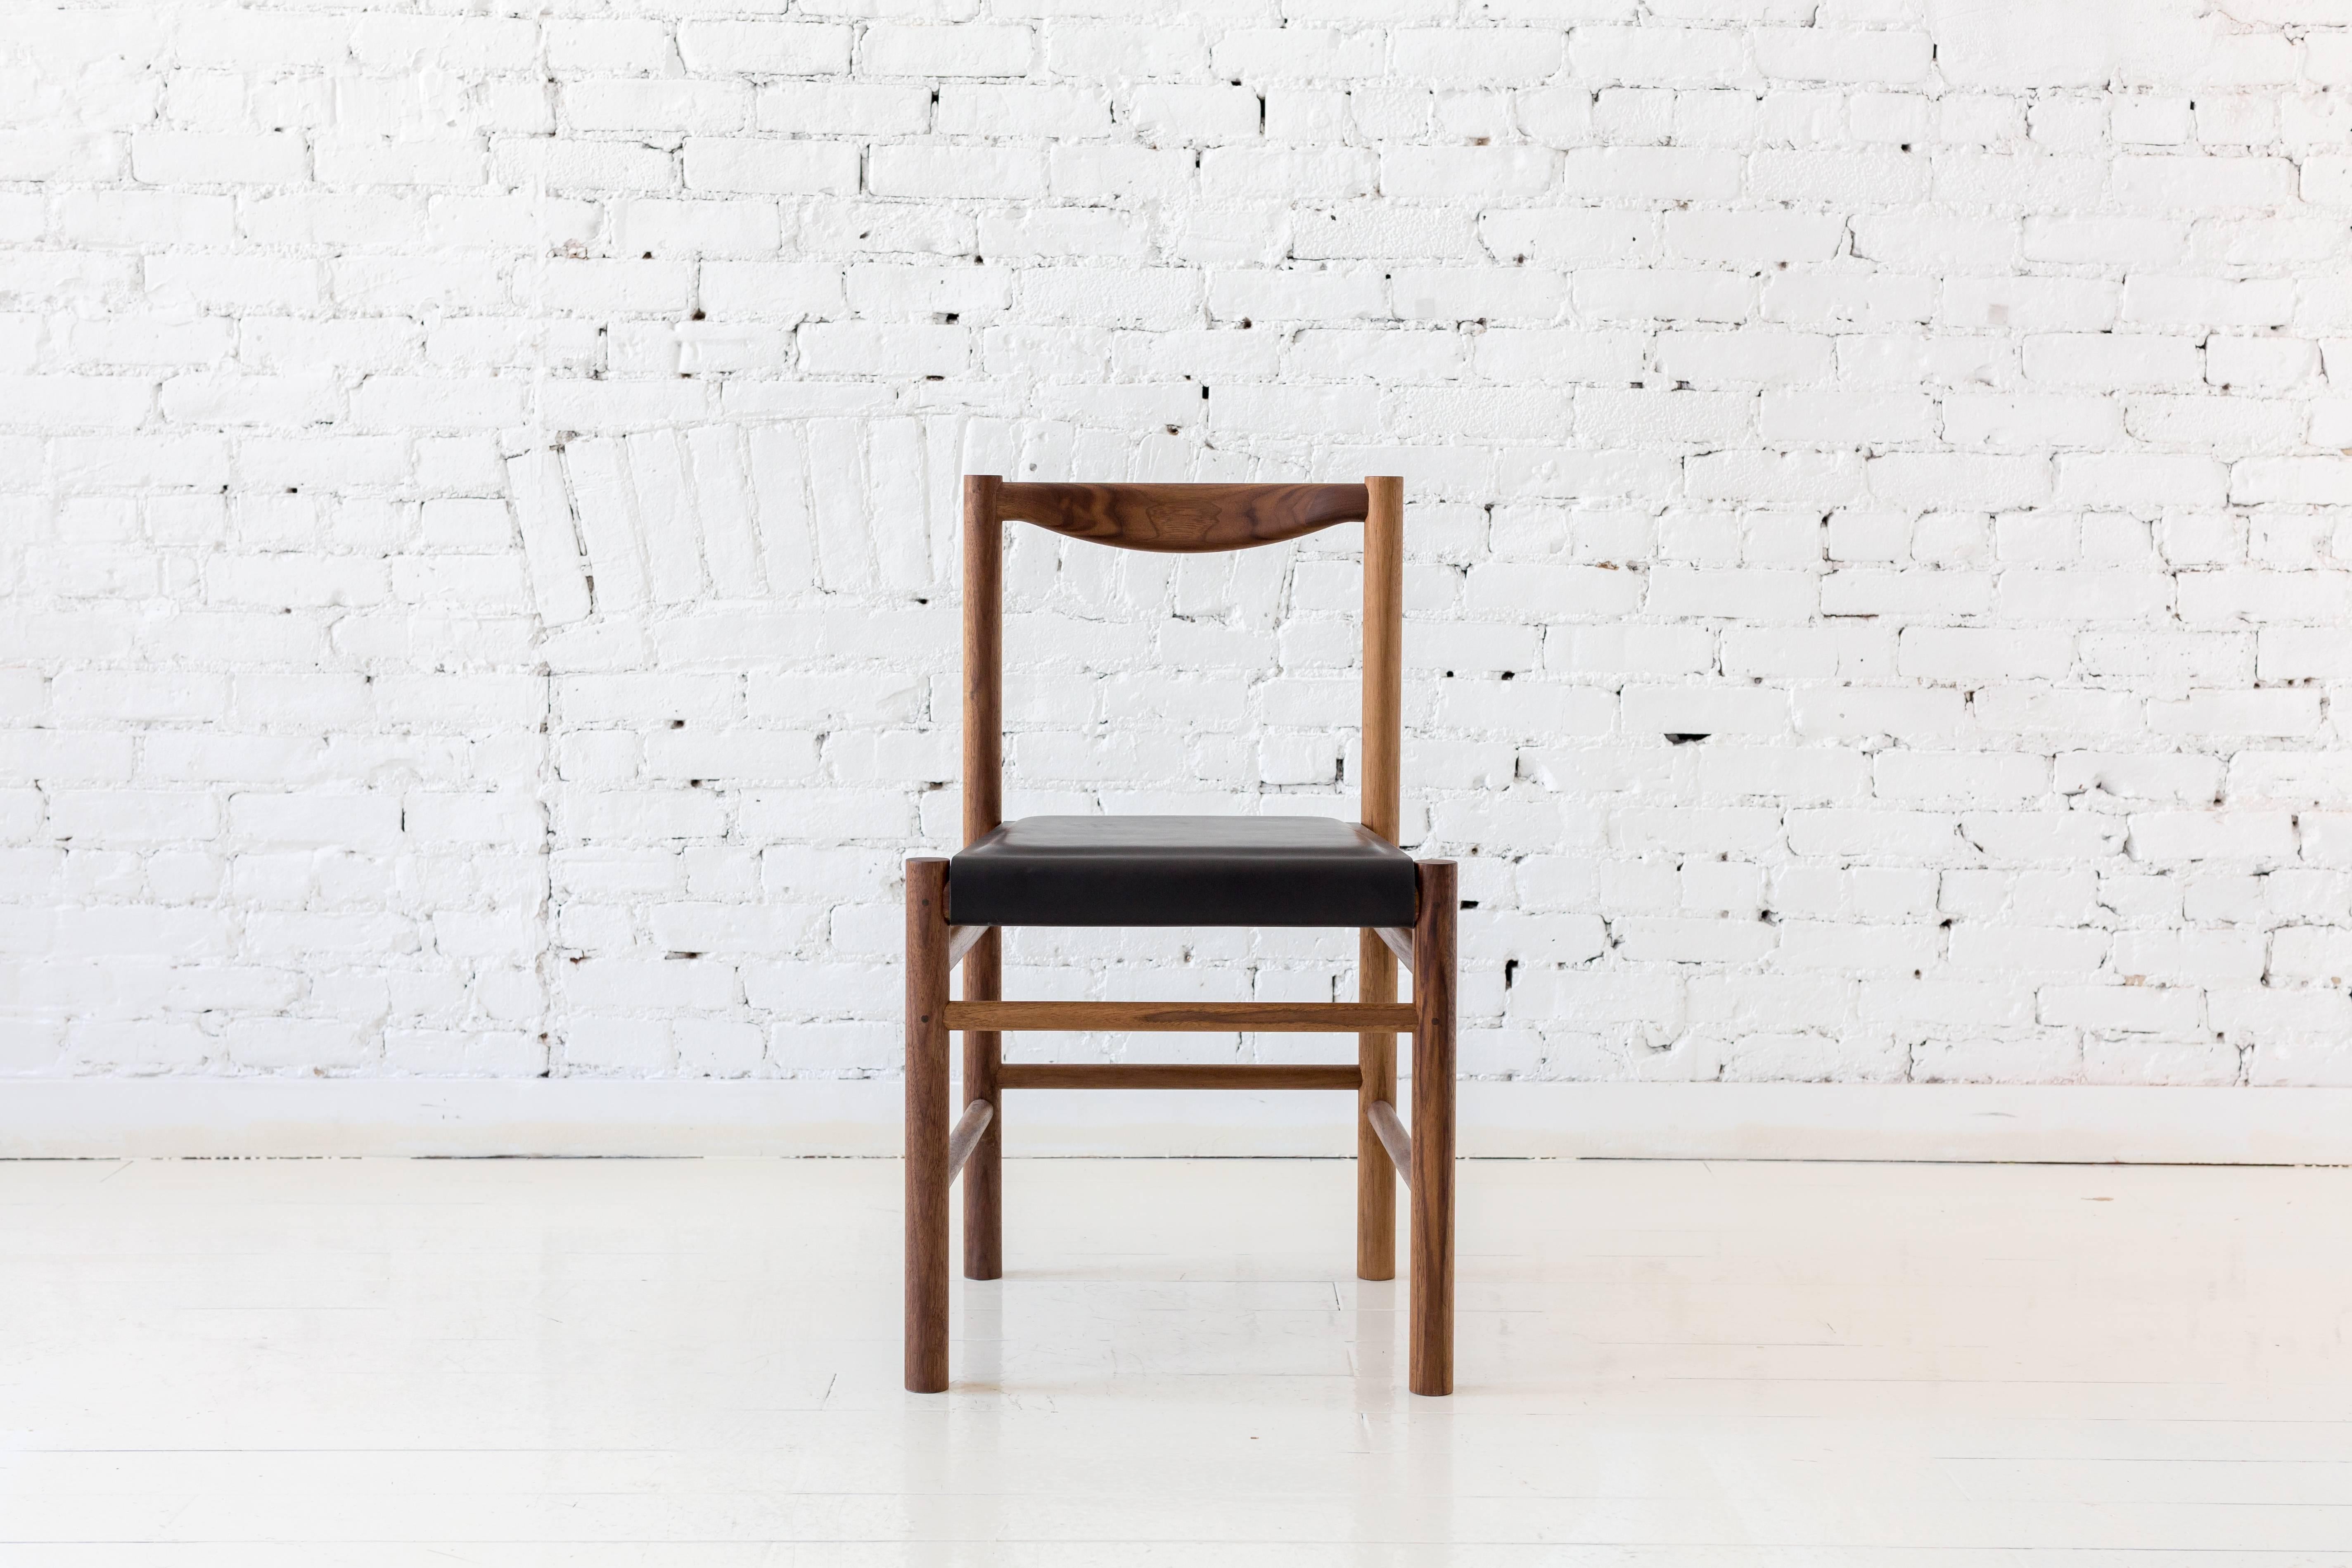 Von den Shakers inspirierter Holzstuhl mit bequemer, konturierter Rückenlehne. Wahlweise mit einer einfachen Holzsitzschale oder einer Sitzschale mit einem flachen Pad aus Leder oder Shearling. Durch seine Schlichtheit ist dieser Stuhl vielseitig